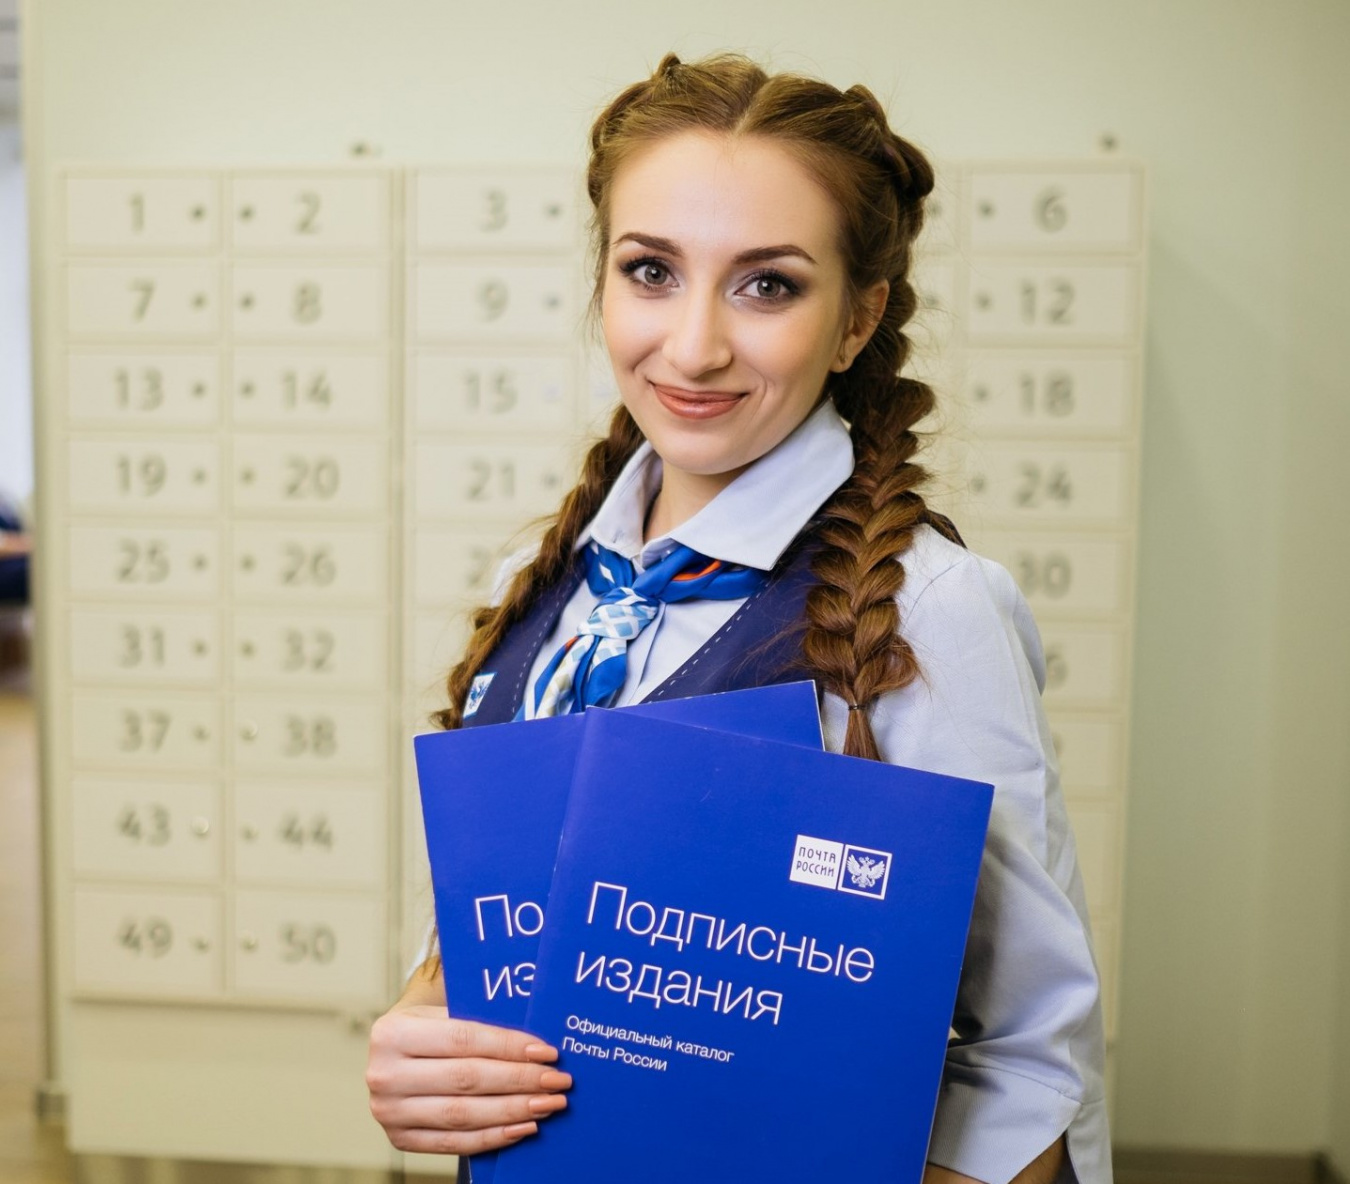 Почта России предлагает жителям Саратовской области подарить подписку к 8 Марта со скидкой до 17%